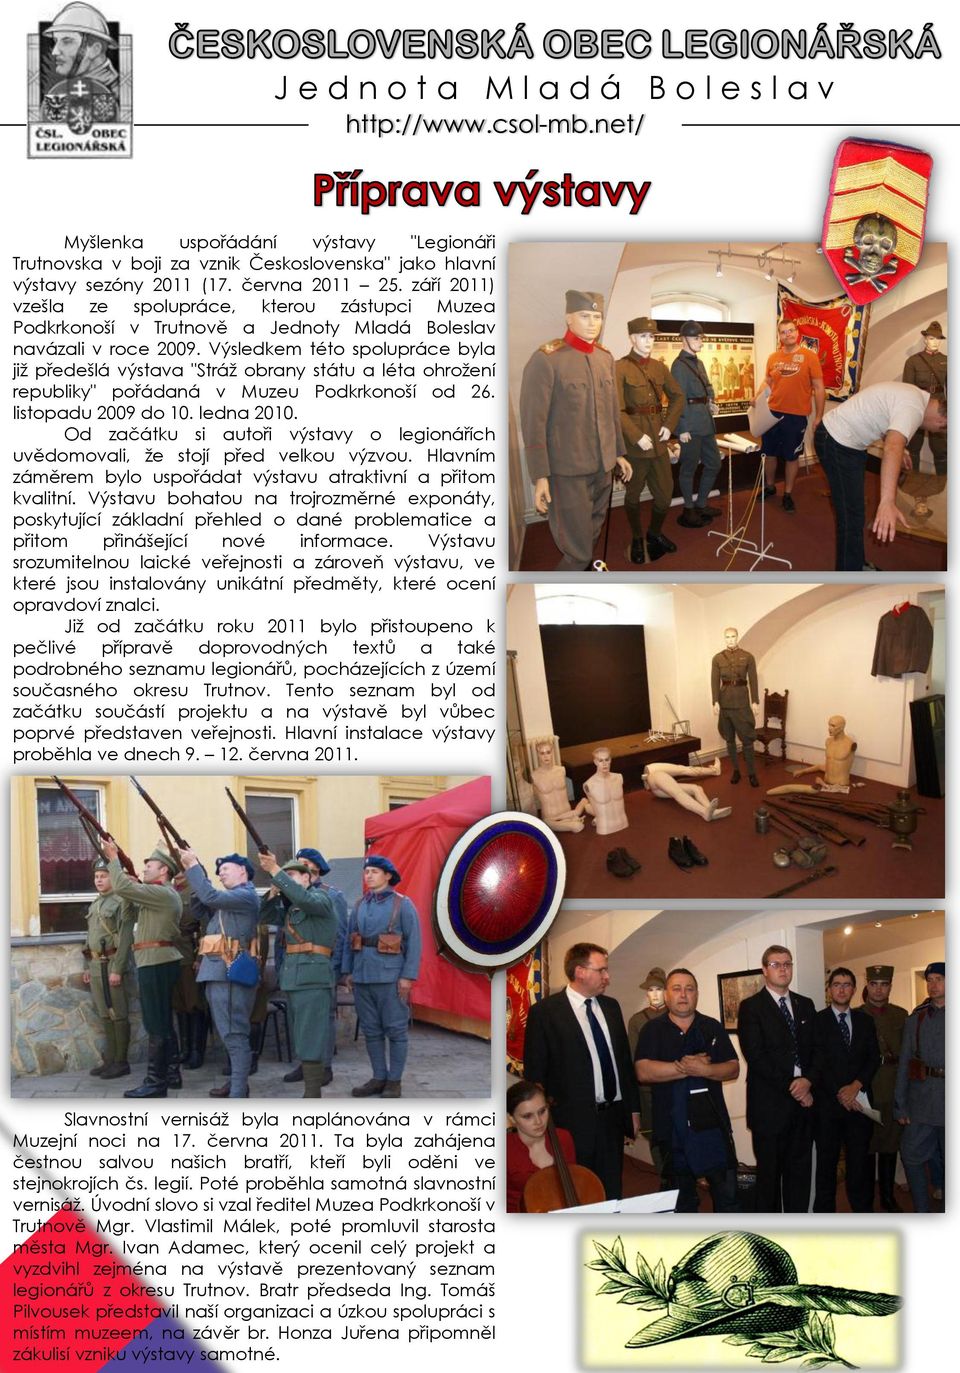 Výsledkem této spolupráce byla již předešlá výstava "Stráž obrany státu a léta ohrožení republiky" pořádaná v Muzeu Podkrkonoší od 26. listopadu 2009 do 10. ledna 2010.